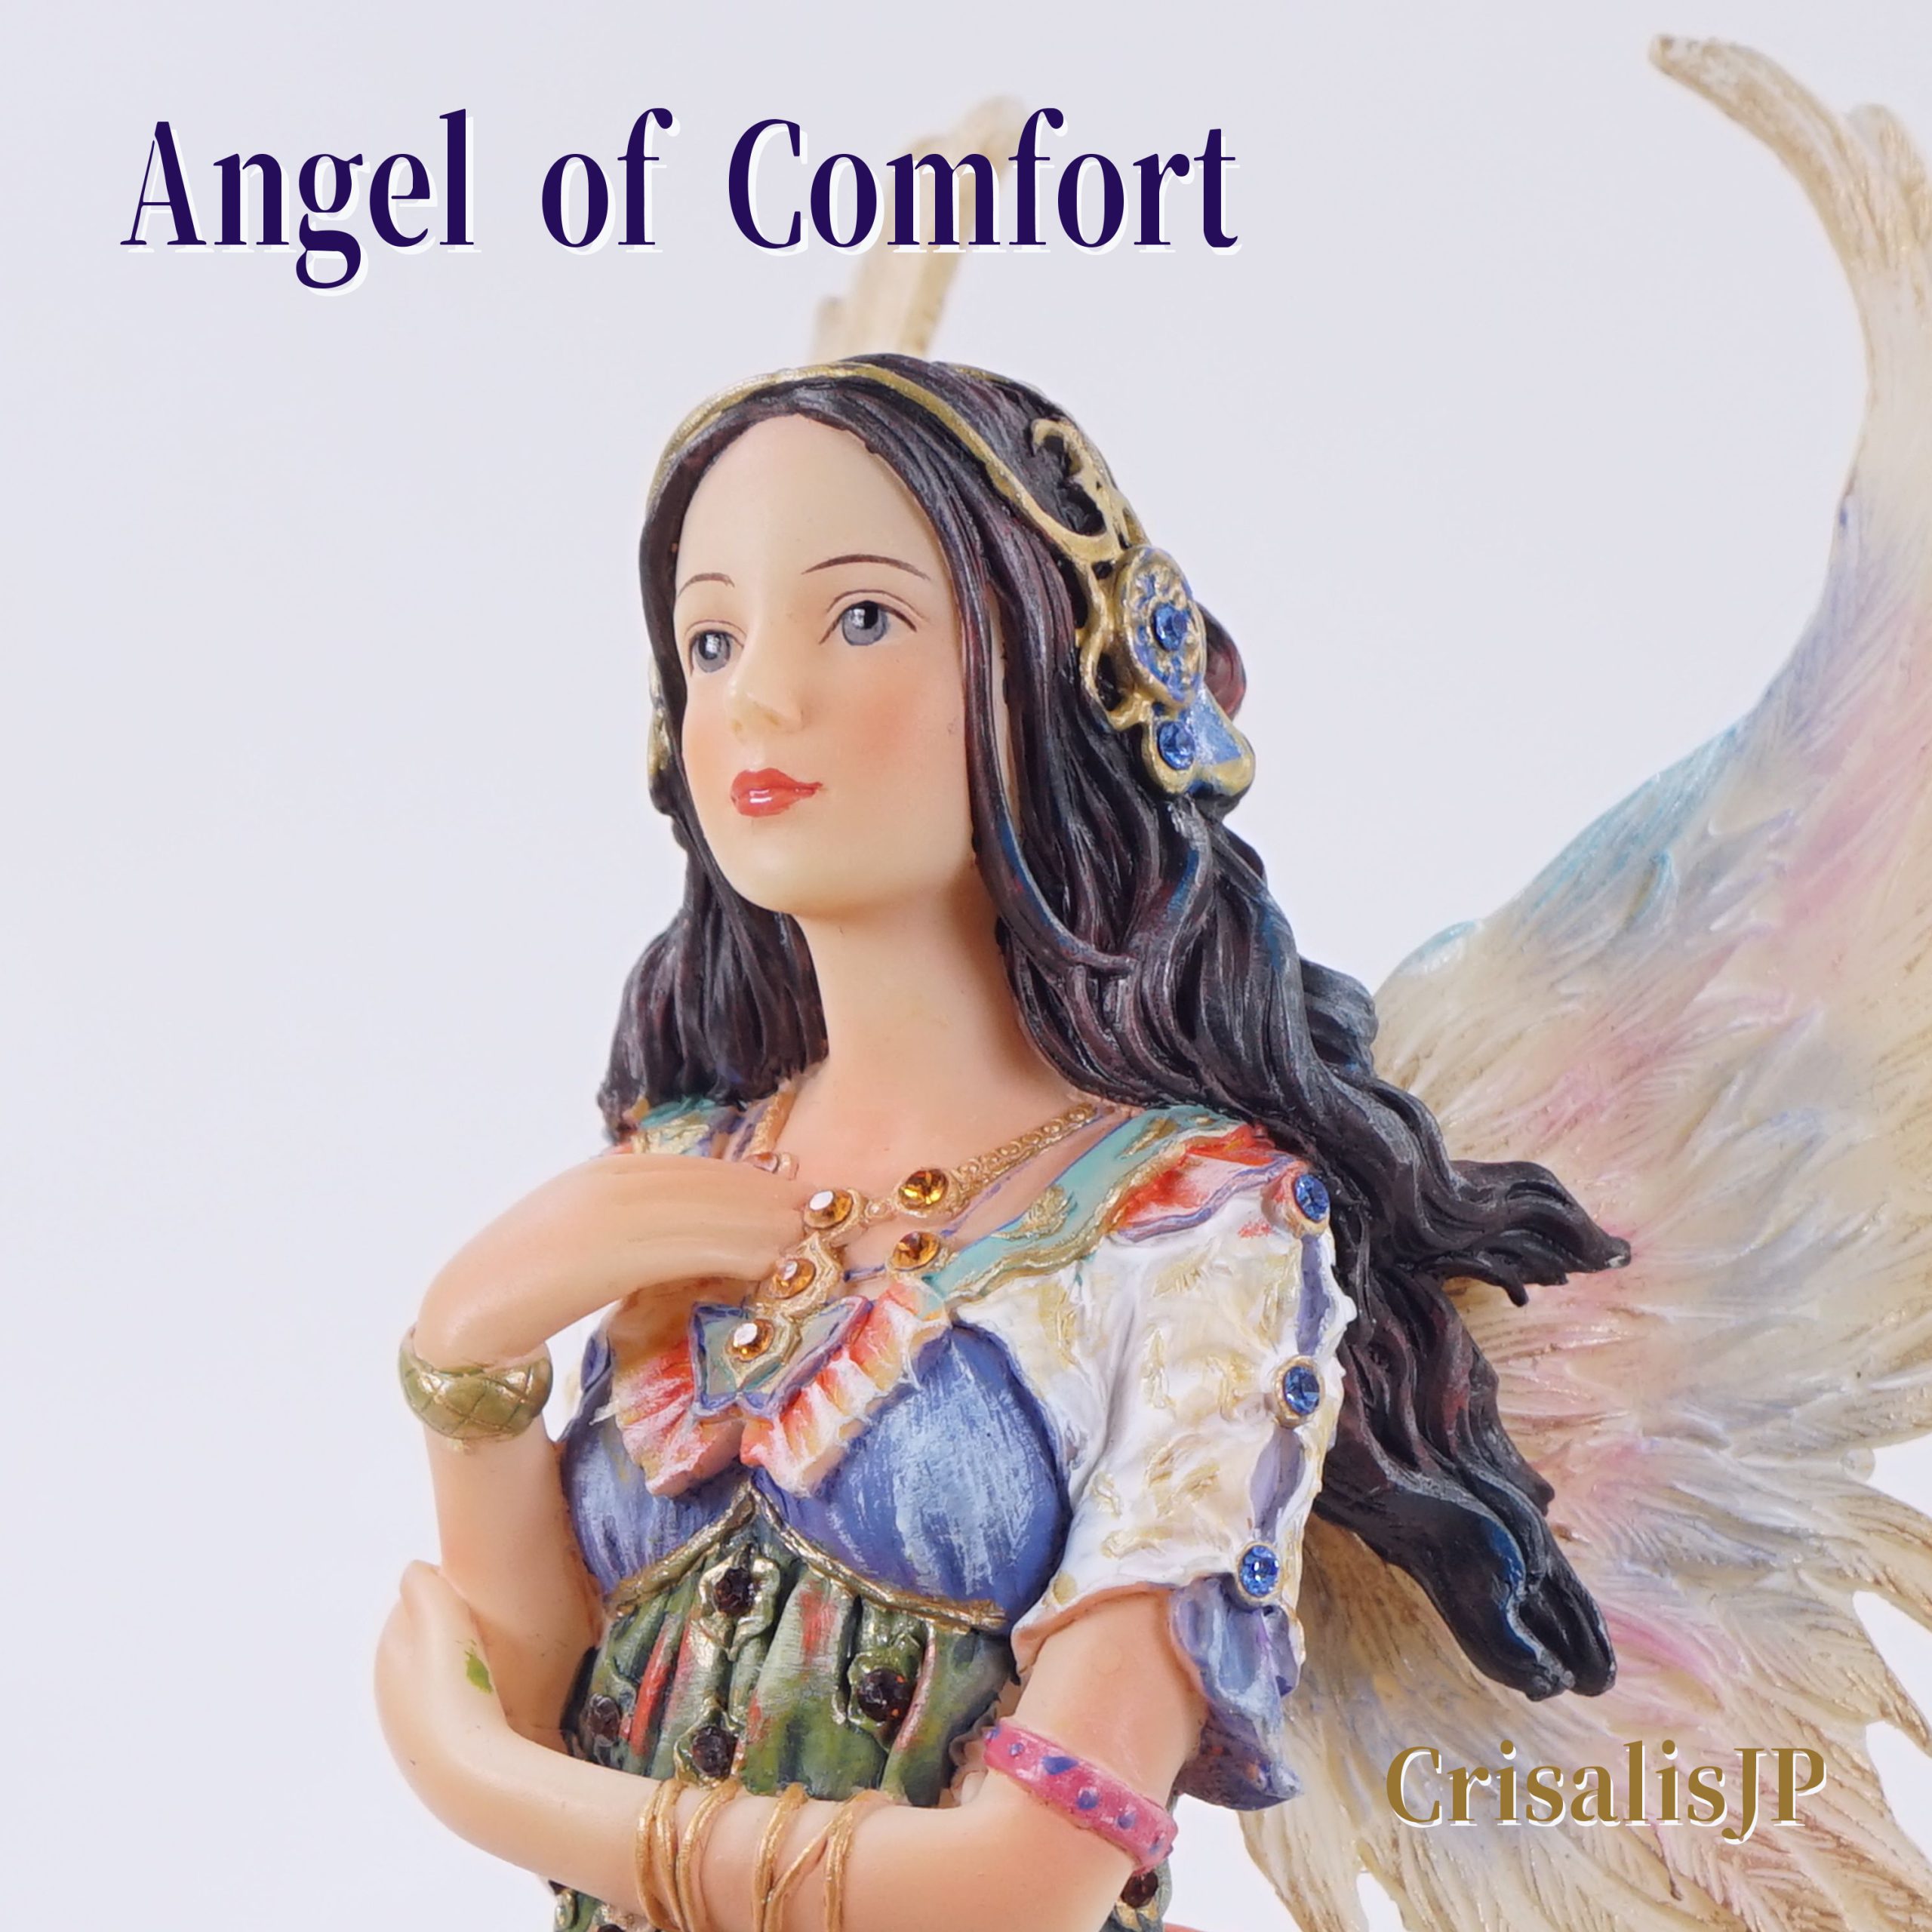 Angel of Comfort